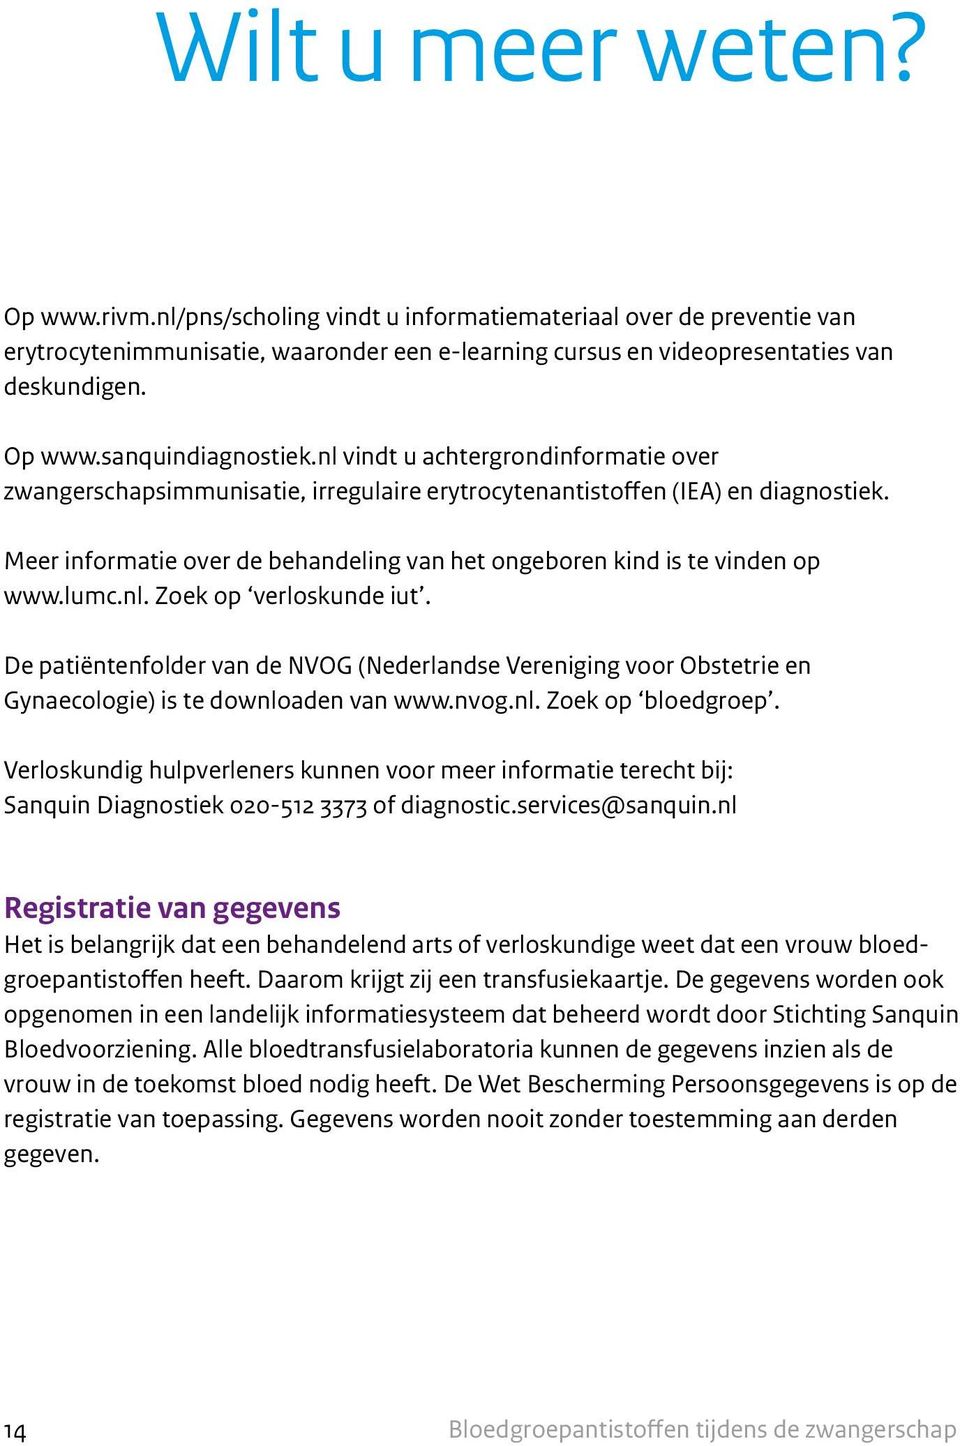 lumc.nl. Zoek op verloskunde iut. De patiëntenfolder van de NVOG (Nederlandse Vereniging voor Obstetrie en Gynaecologie) is te downloaden van www.nvog.nl. Zoek op bloedgroep.